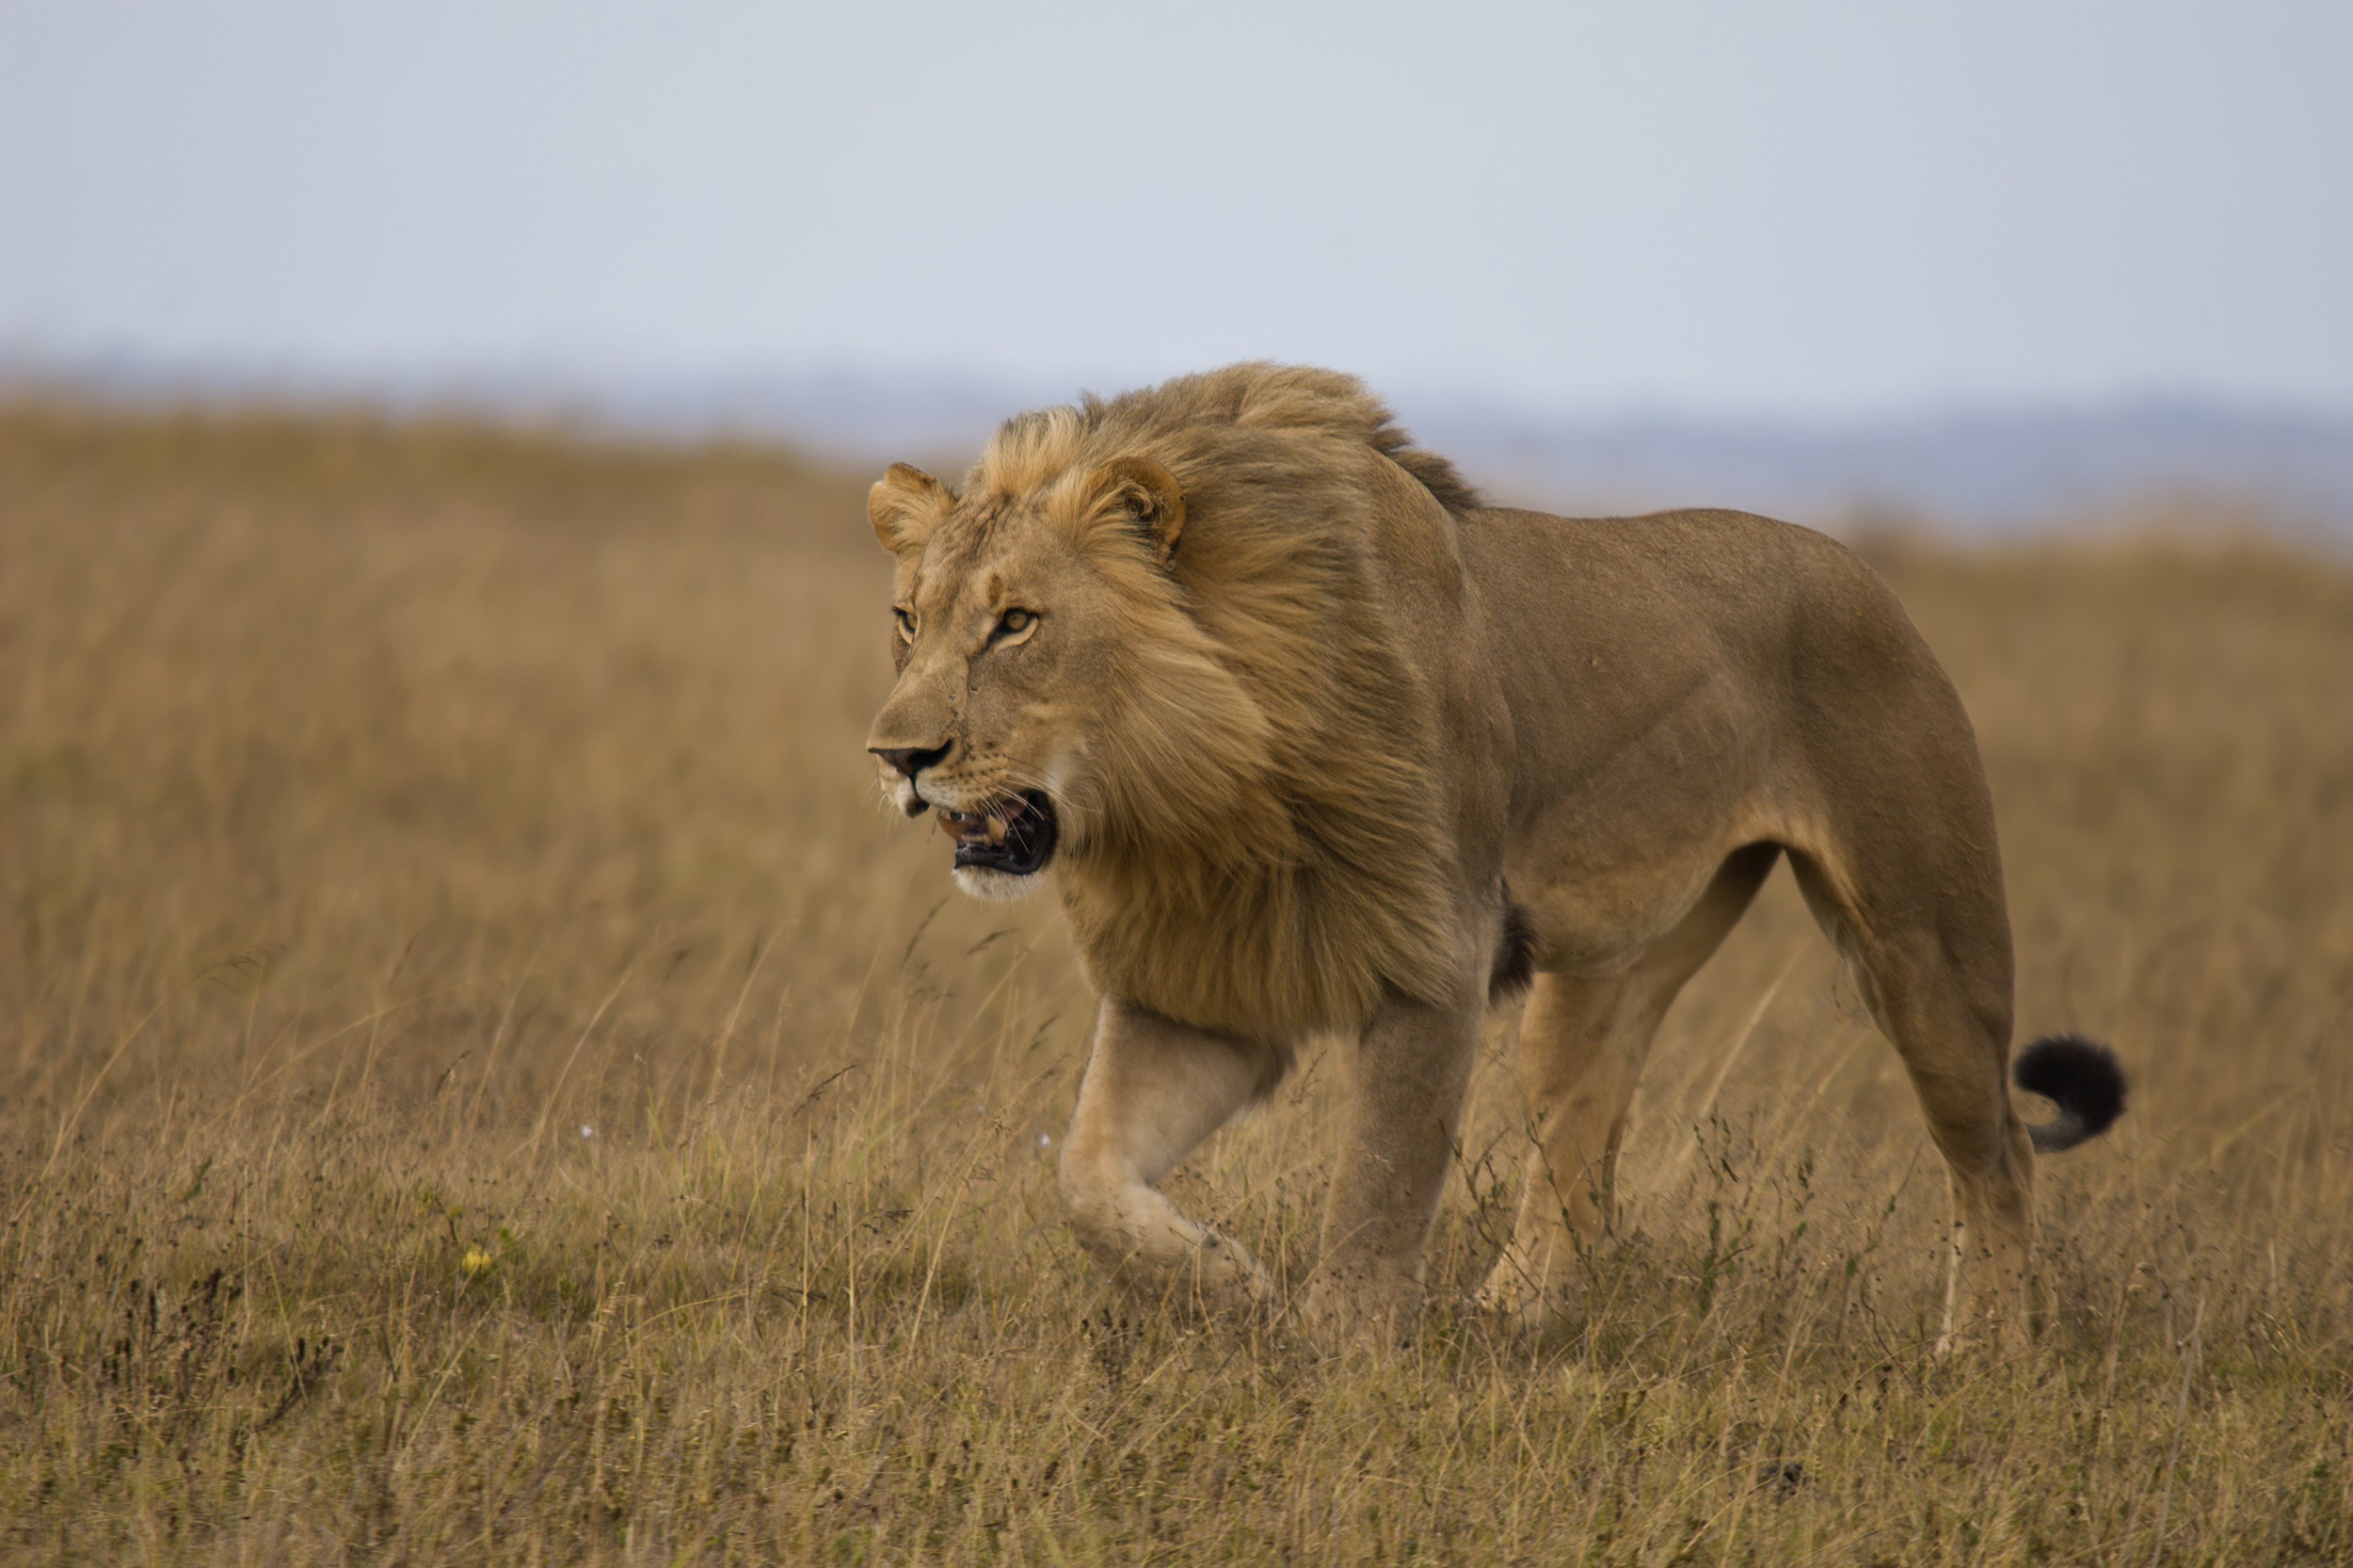 Wild lion in Kenya